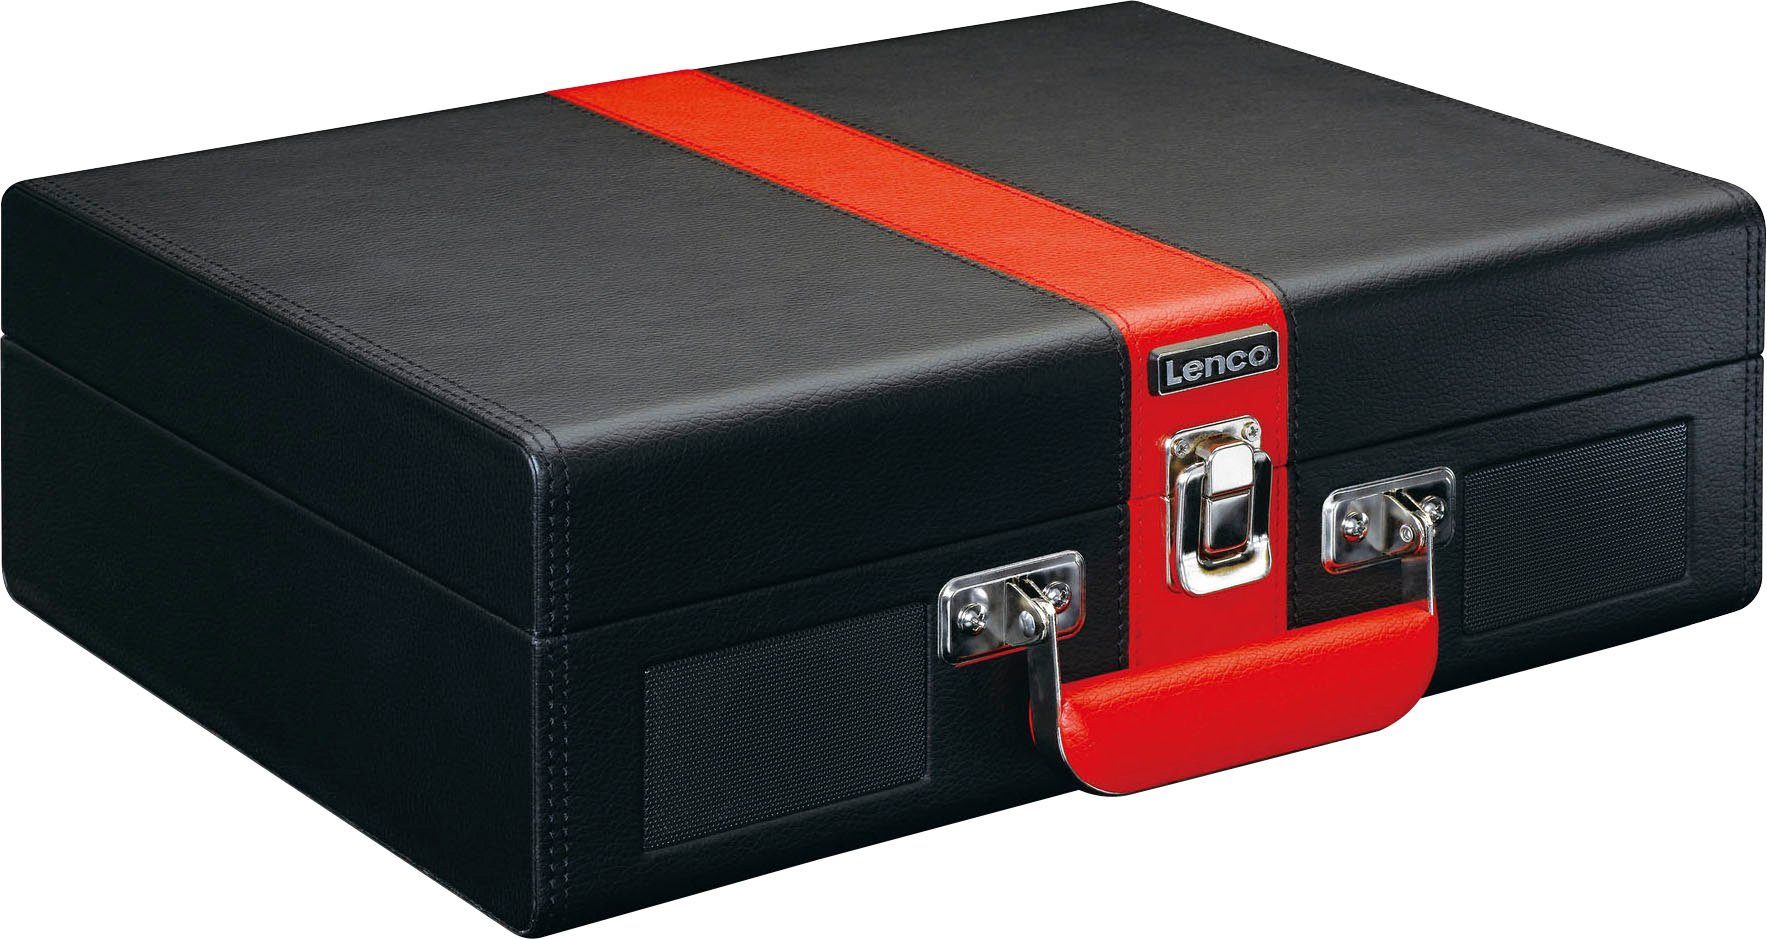 eingebauten Koffer Plattenspieler mit und Lenco Plattenspieler Rot-Schwarz Lsp. (Riemenantrieb) BT